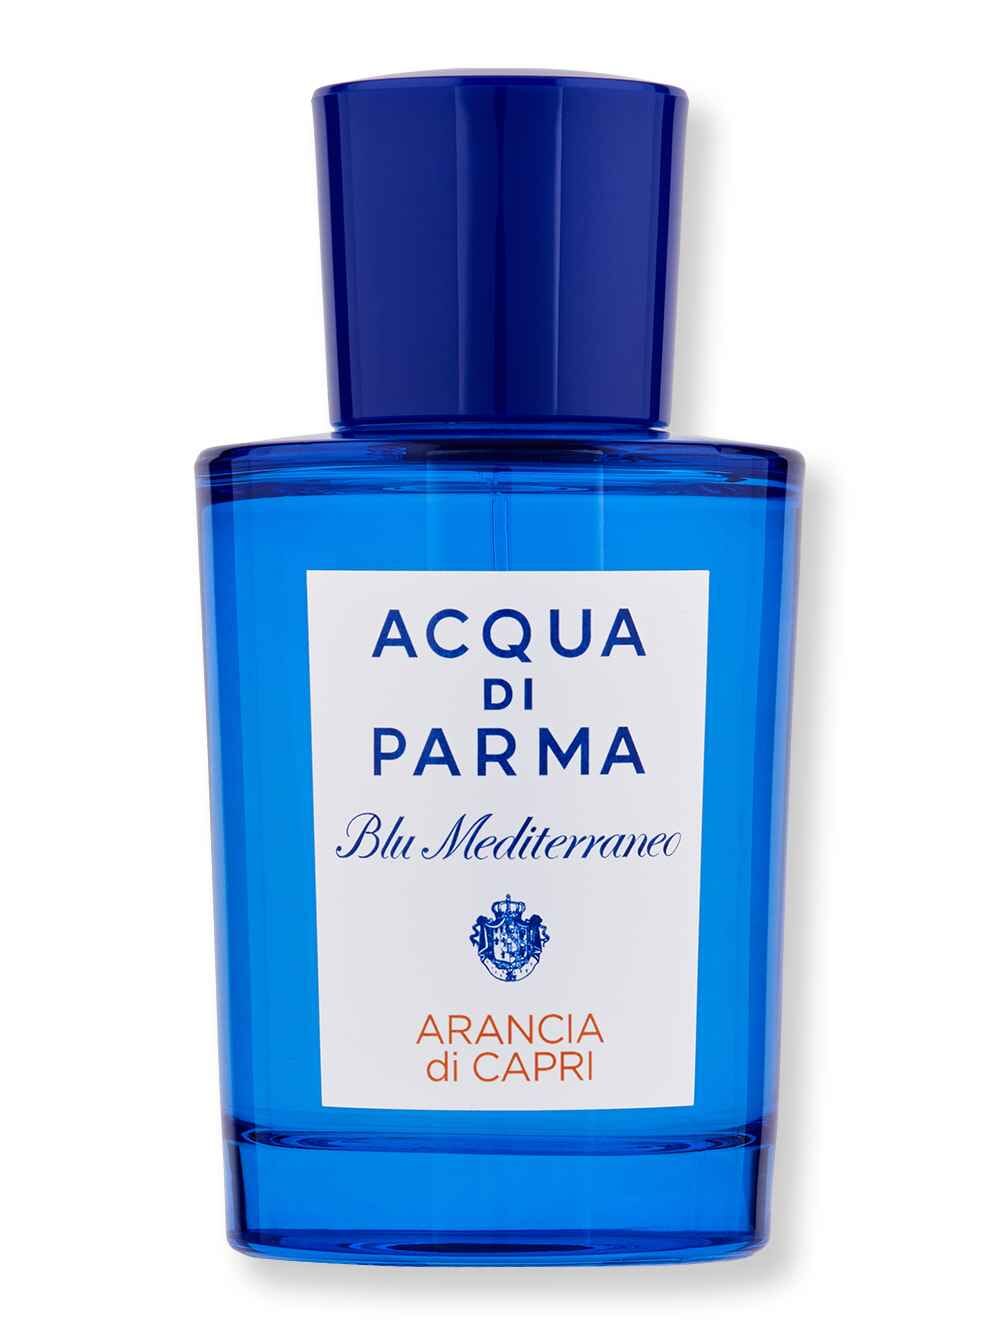 Acqua di Parma Acqua di Parma Blu Mediterraneo Arancia di Capri EDT 2.5 oz75 ml Perfumes & Colognes 